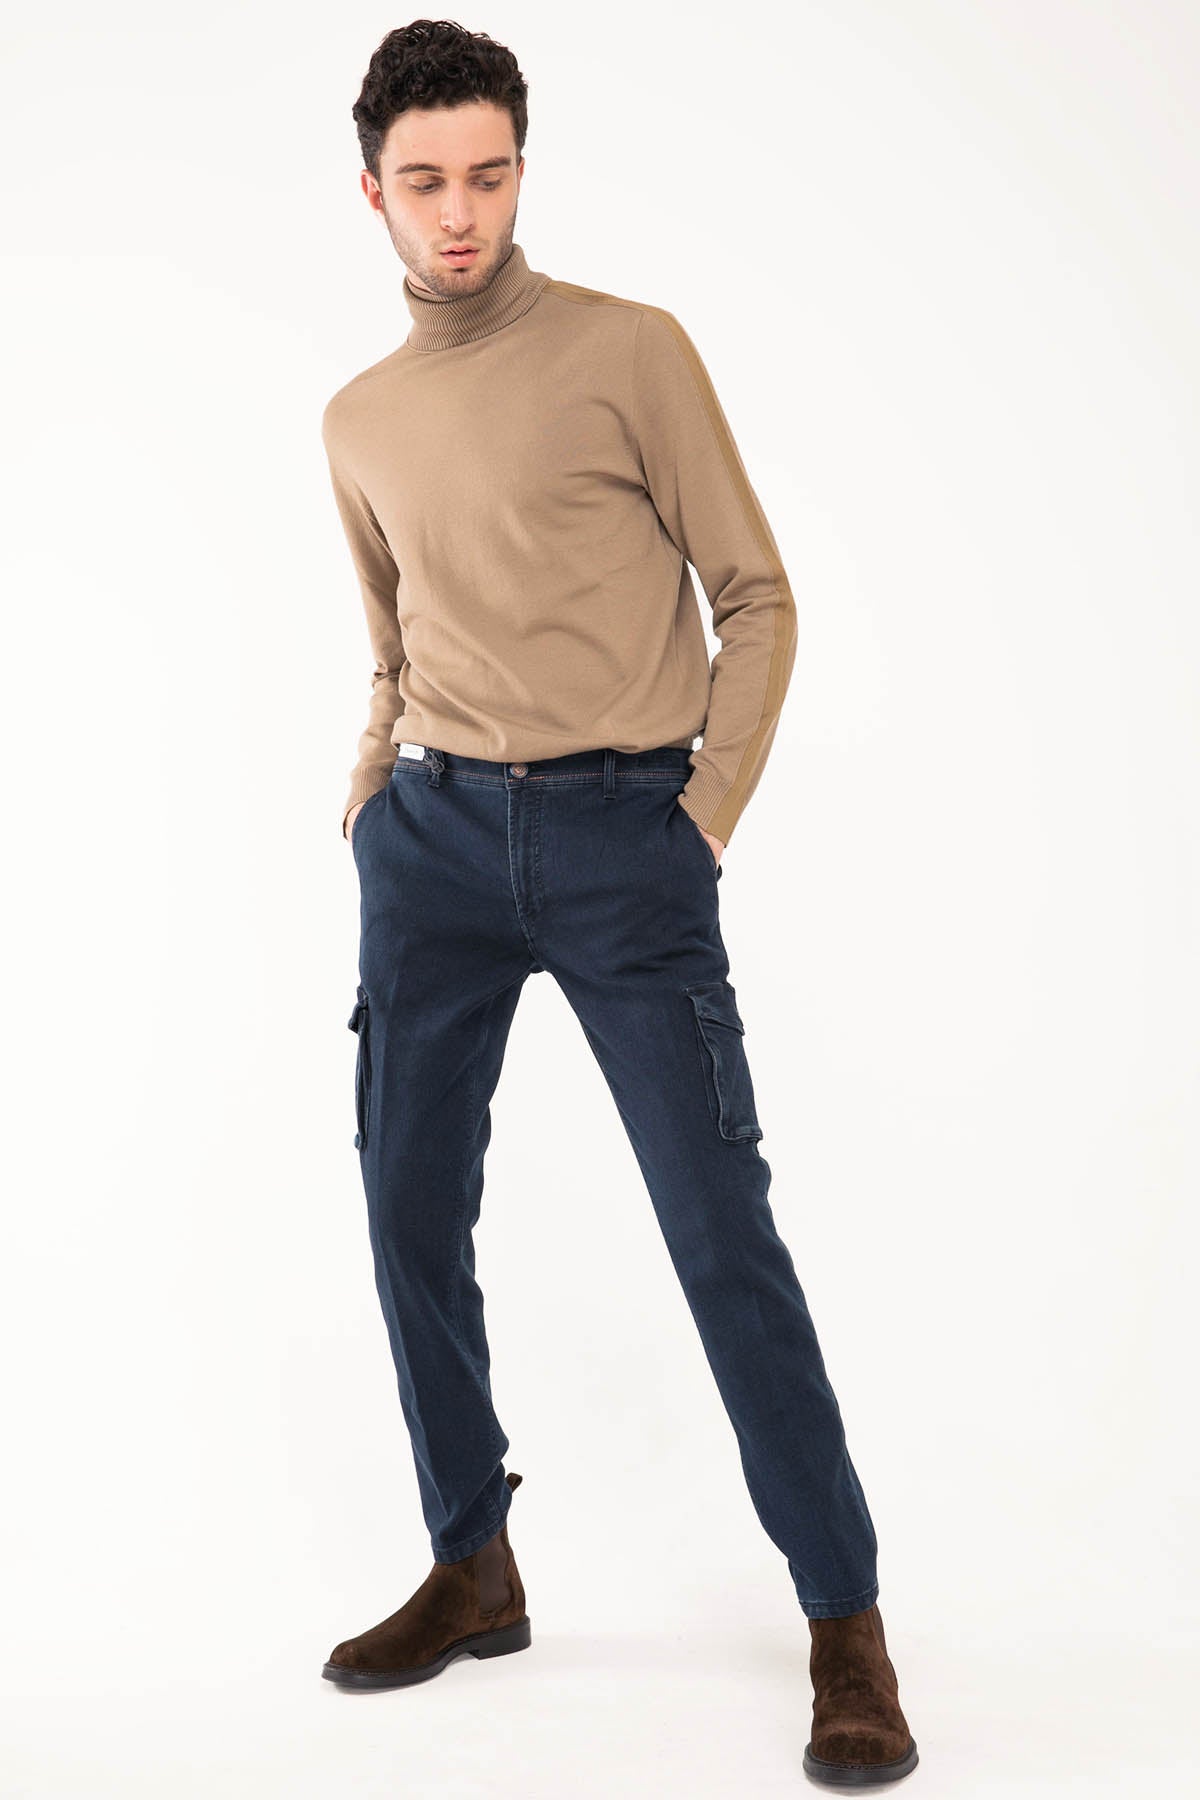 Richard J. Brown Nairobi Jeans-Libas Trendy Fashion Store